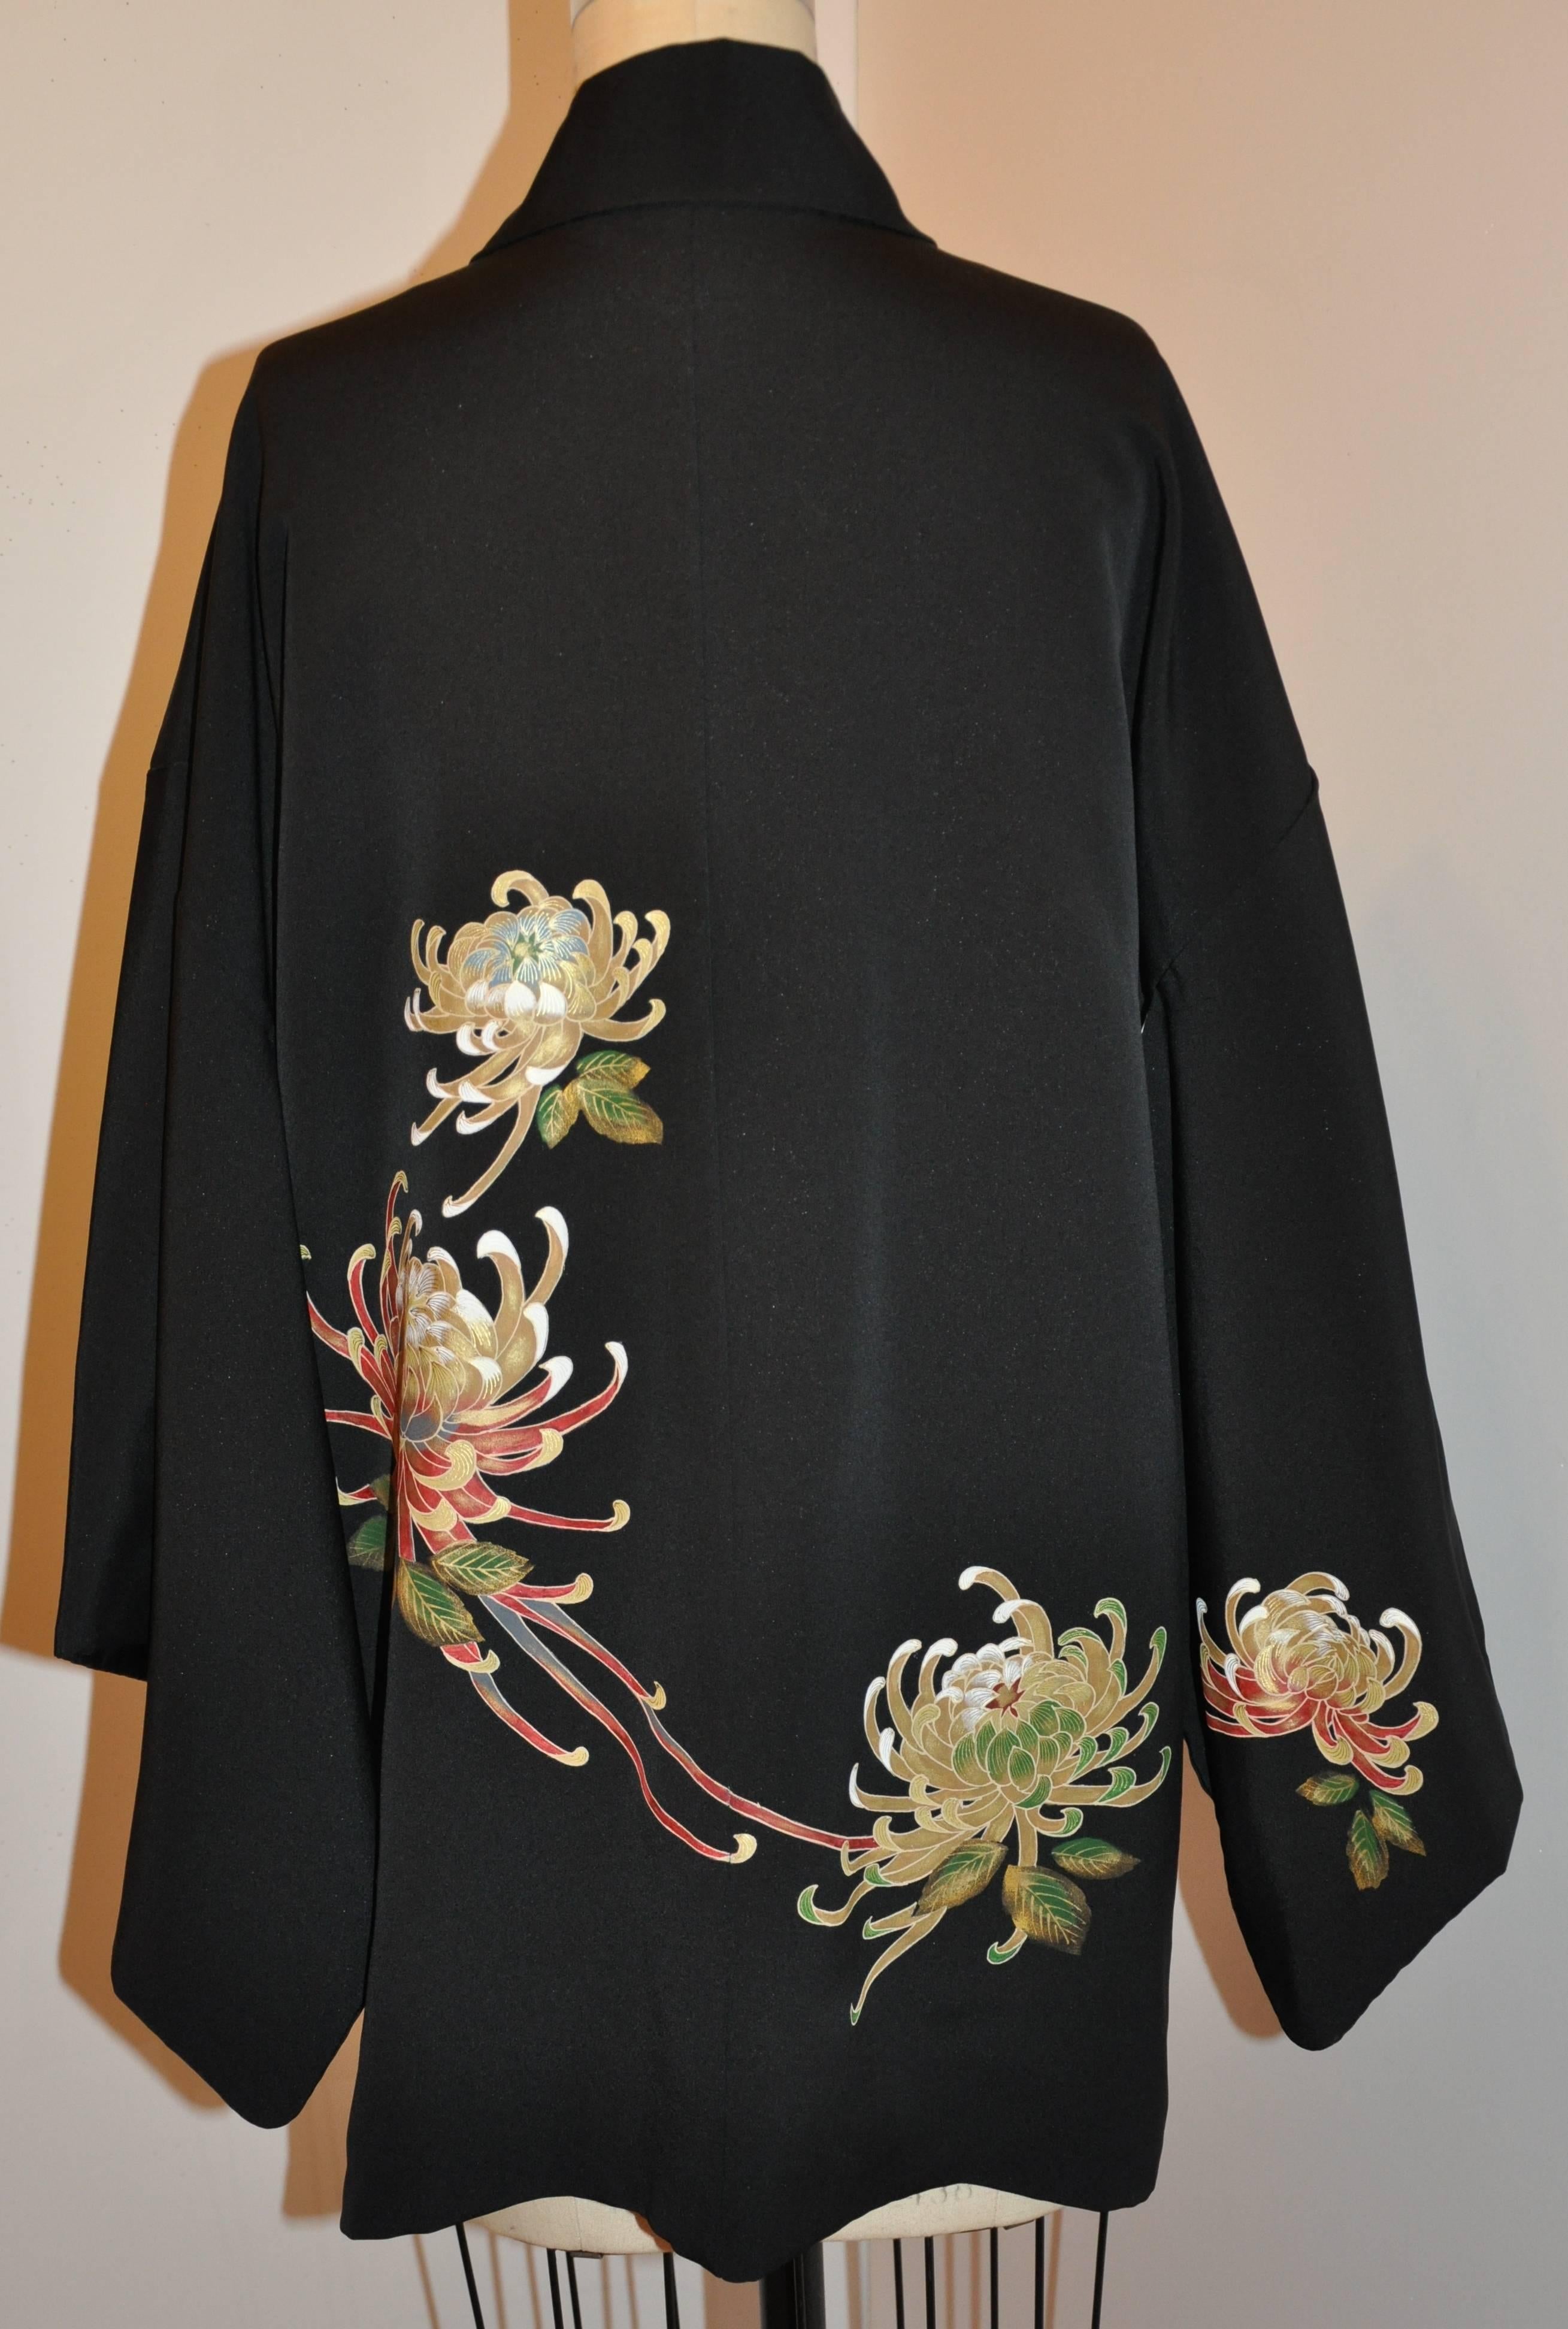 Retro Silk Kimono Robe - 6 For Sale on 1stDibs